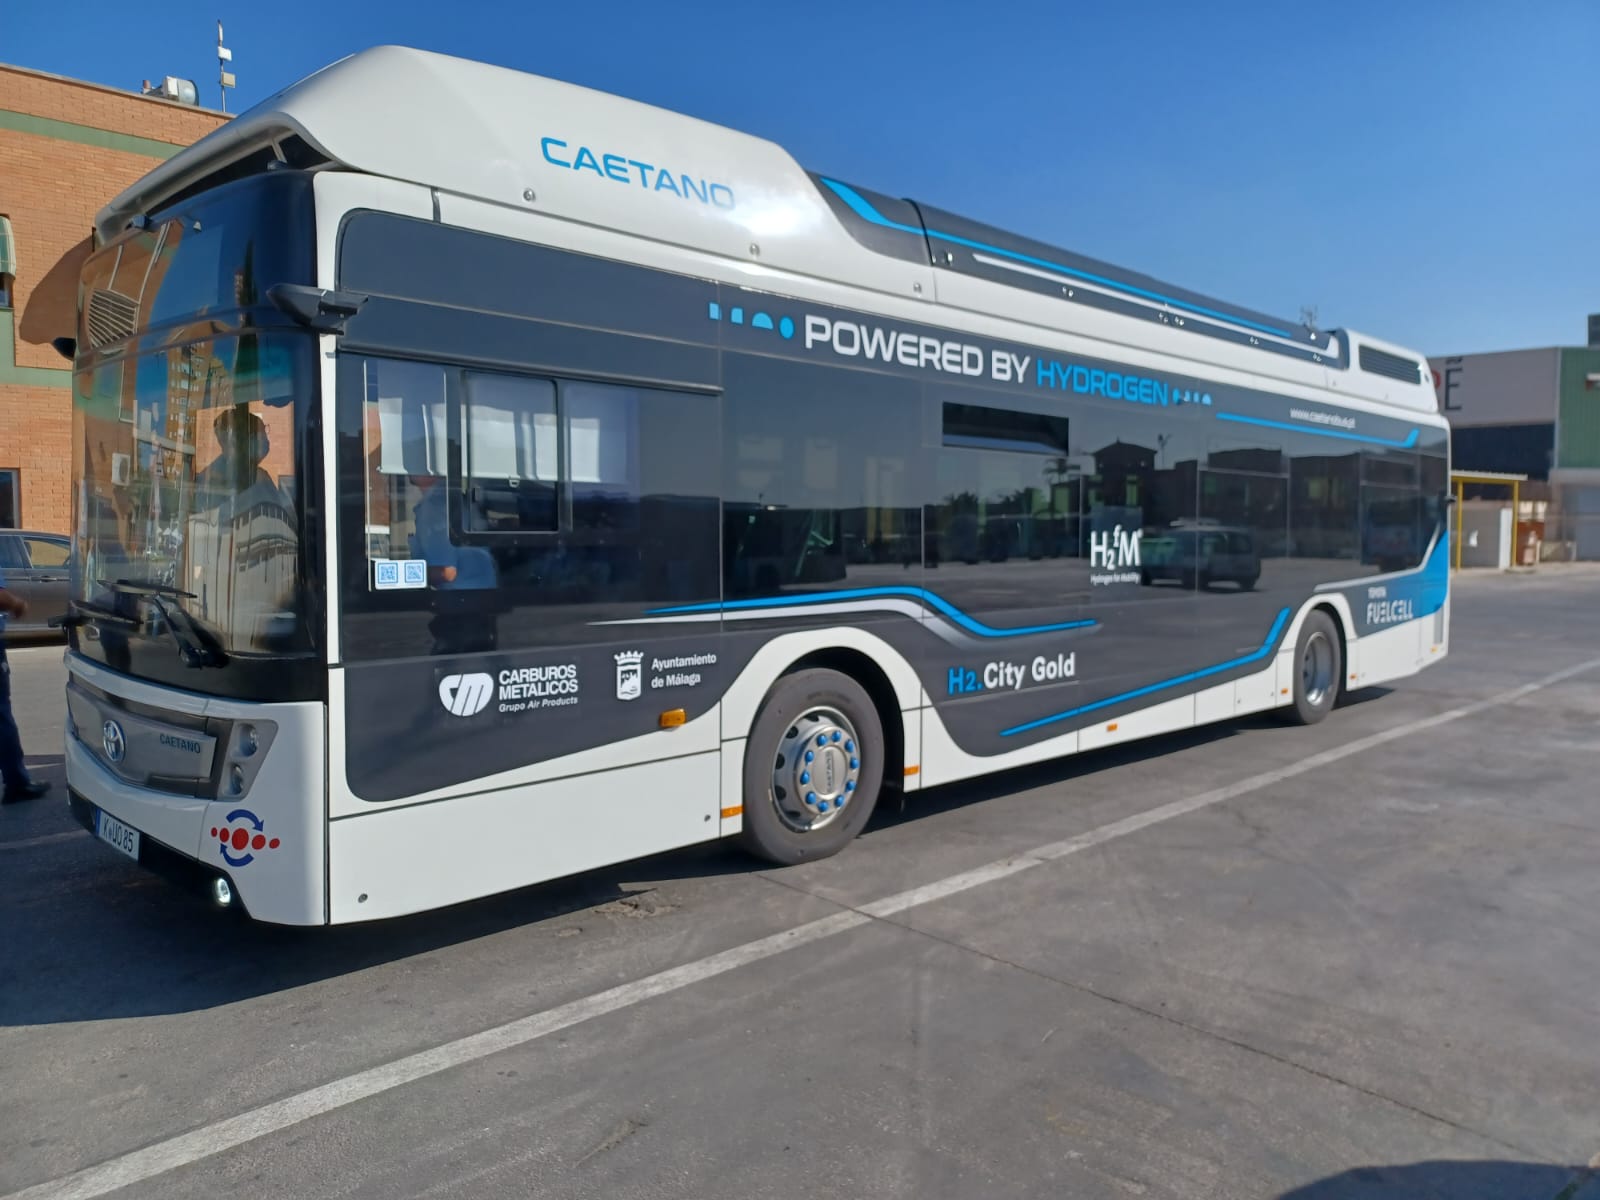 CaetanoBus vai fornecer mais 30 autocarros elétricos para a Carris